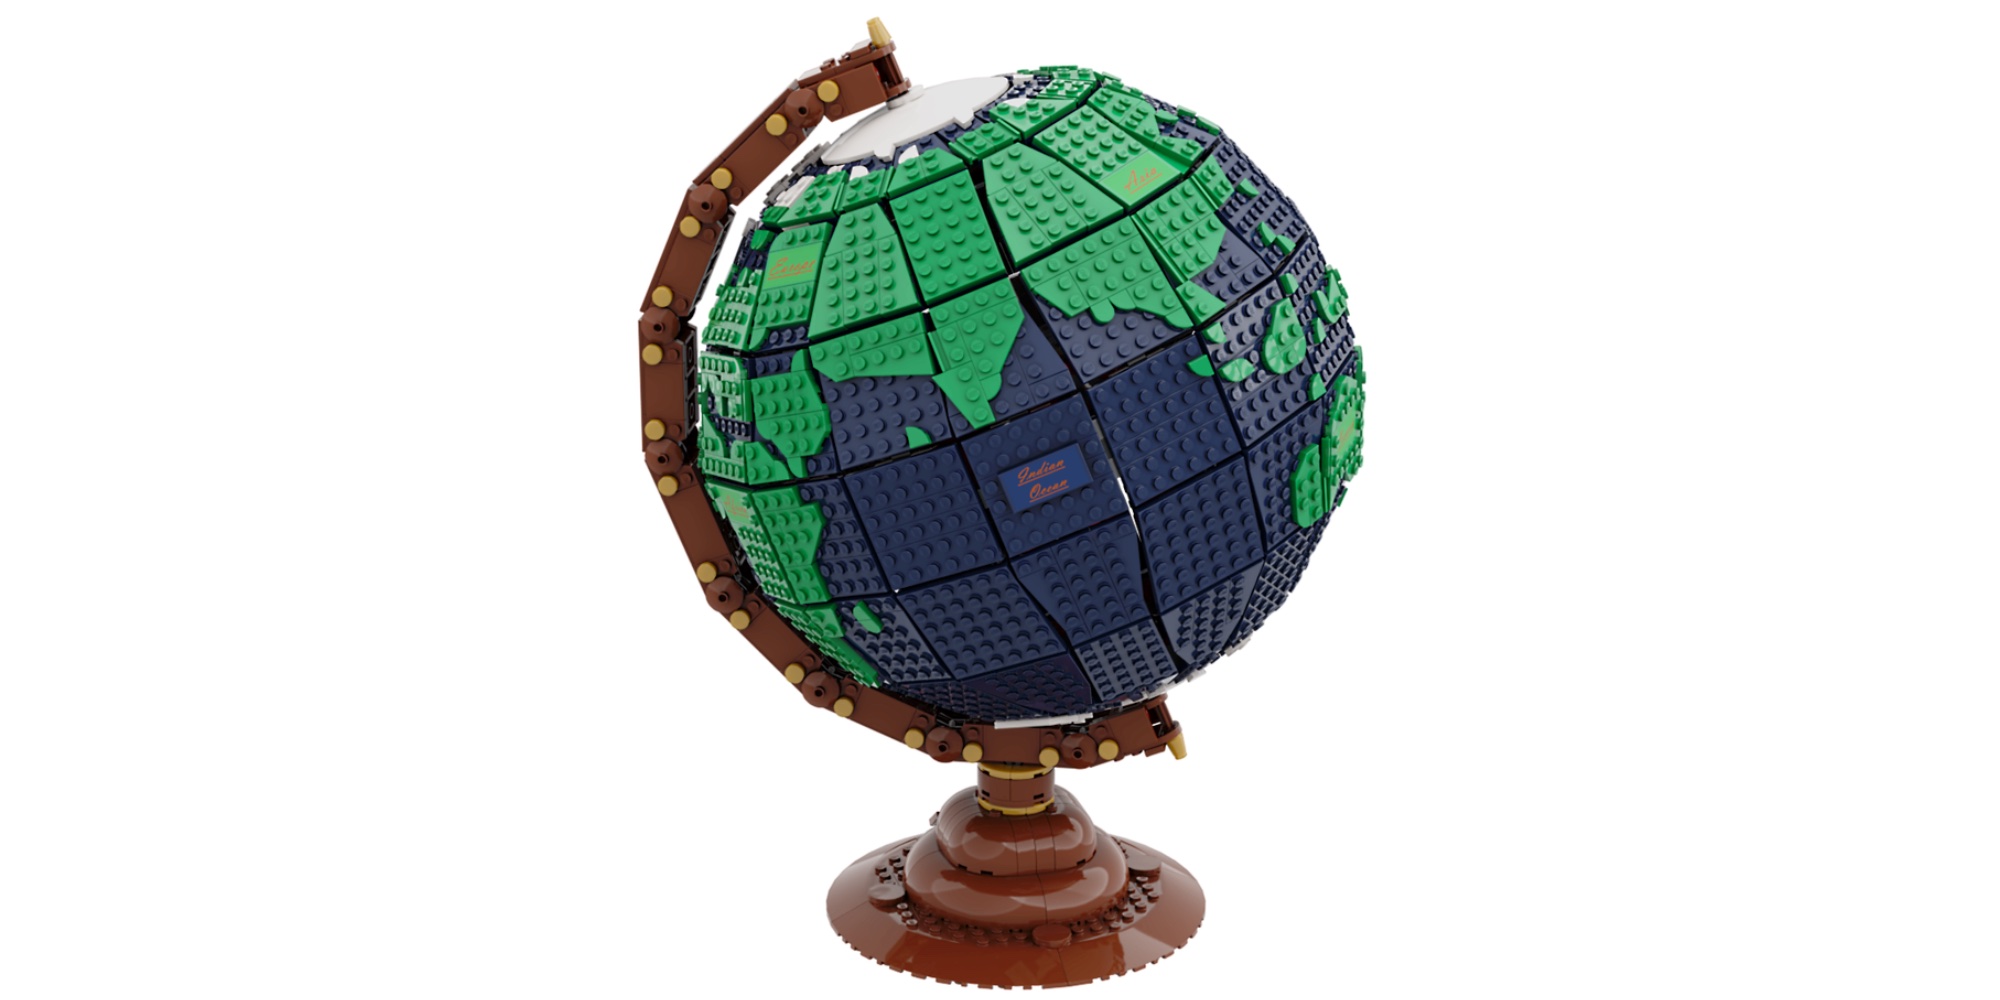 Lego globe